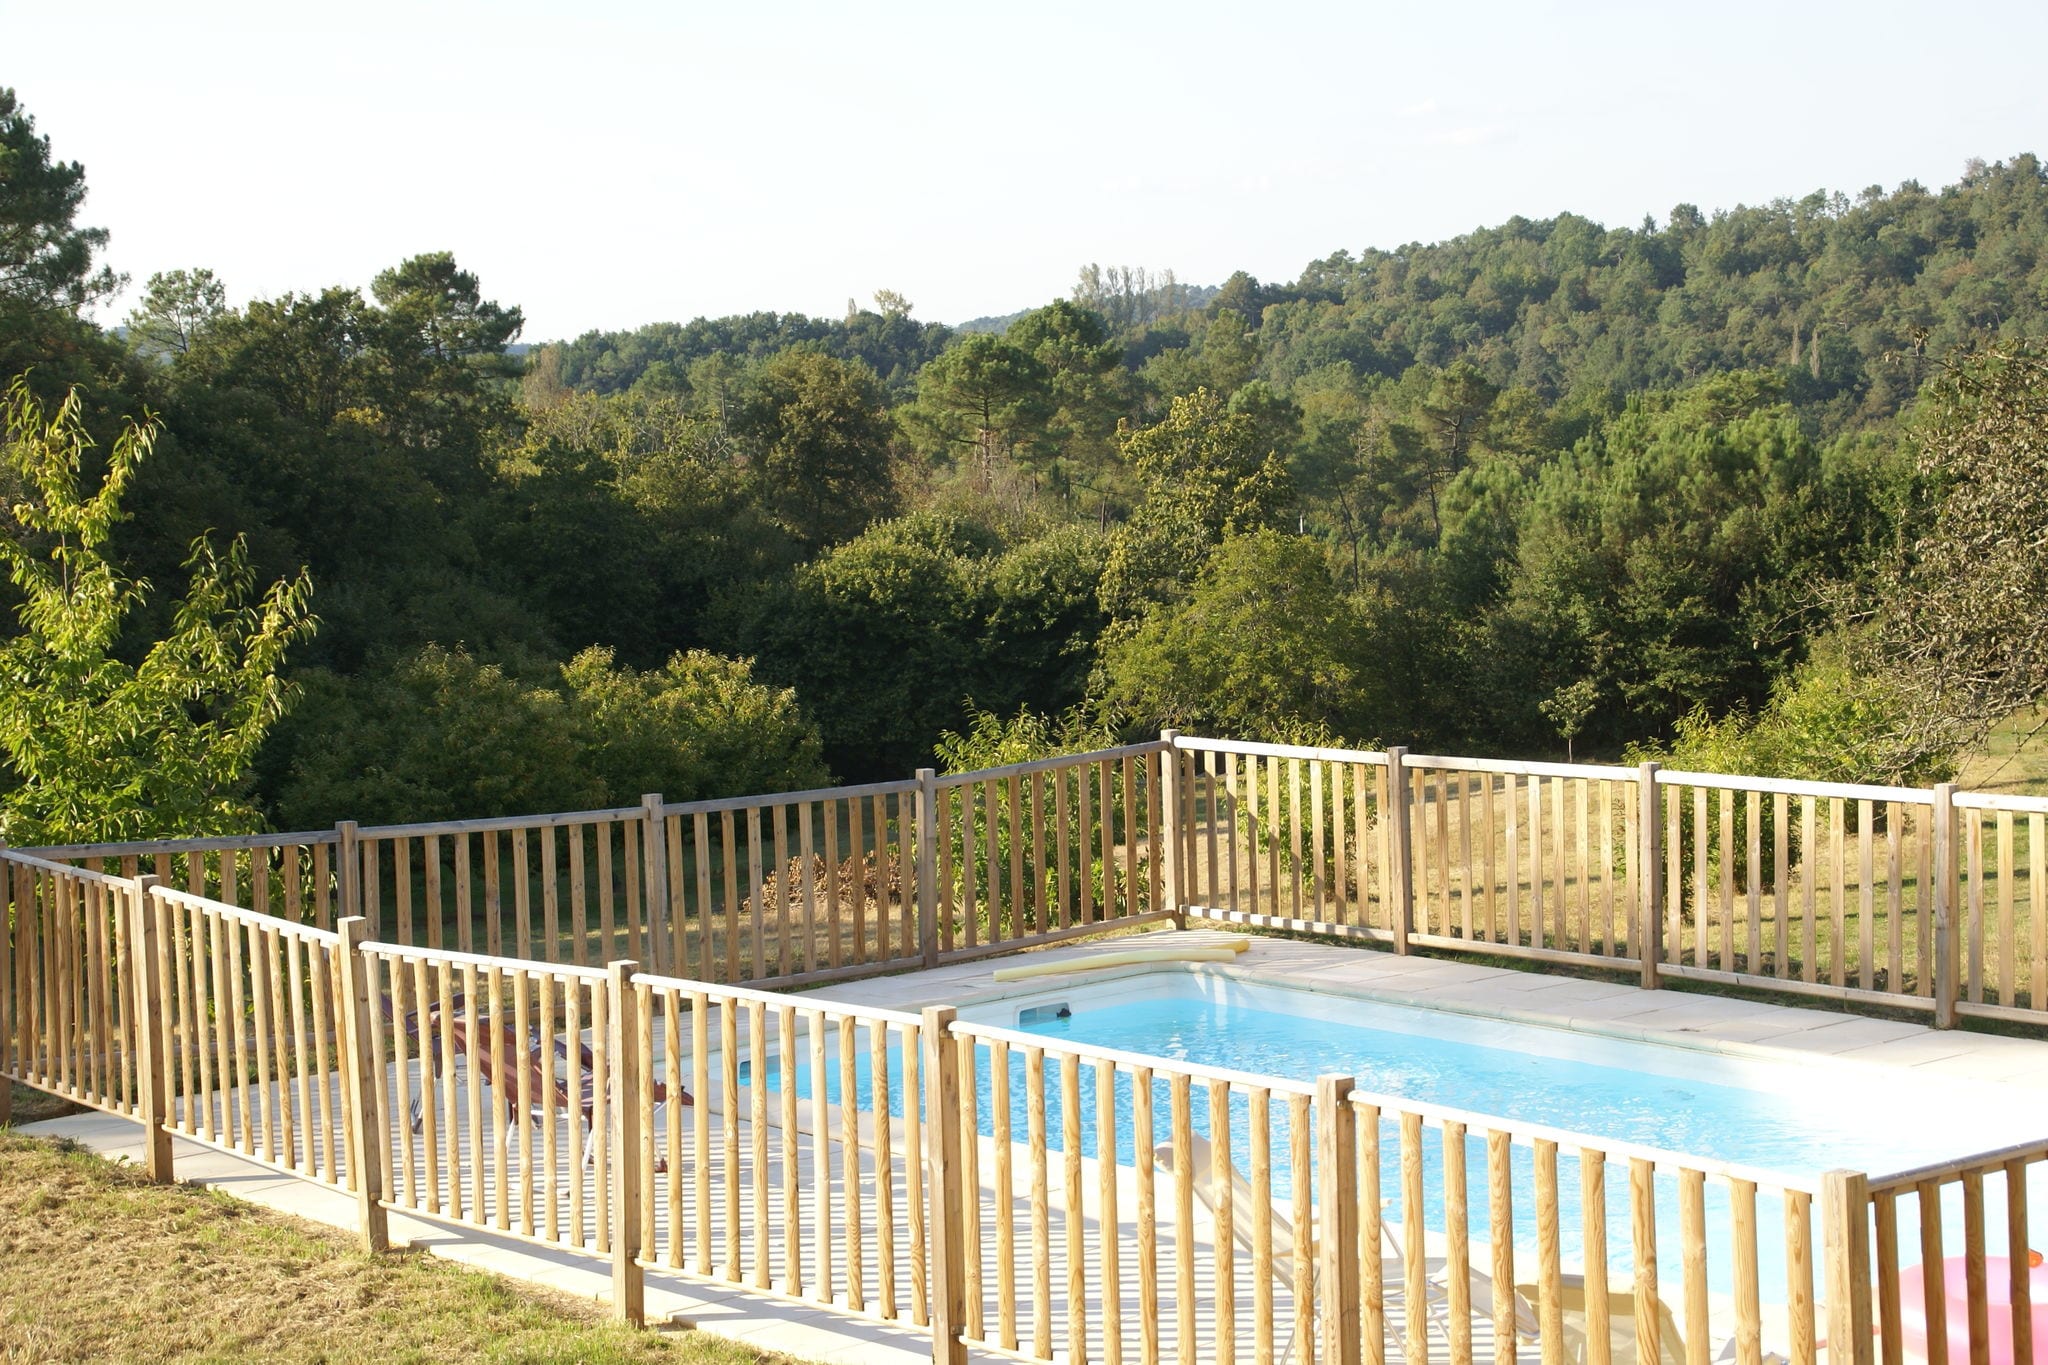 Maison de vacances paisible à Loubejac avec piscine privée